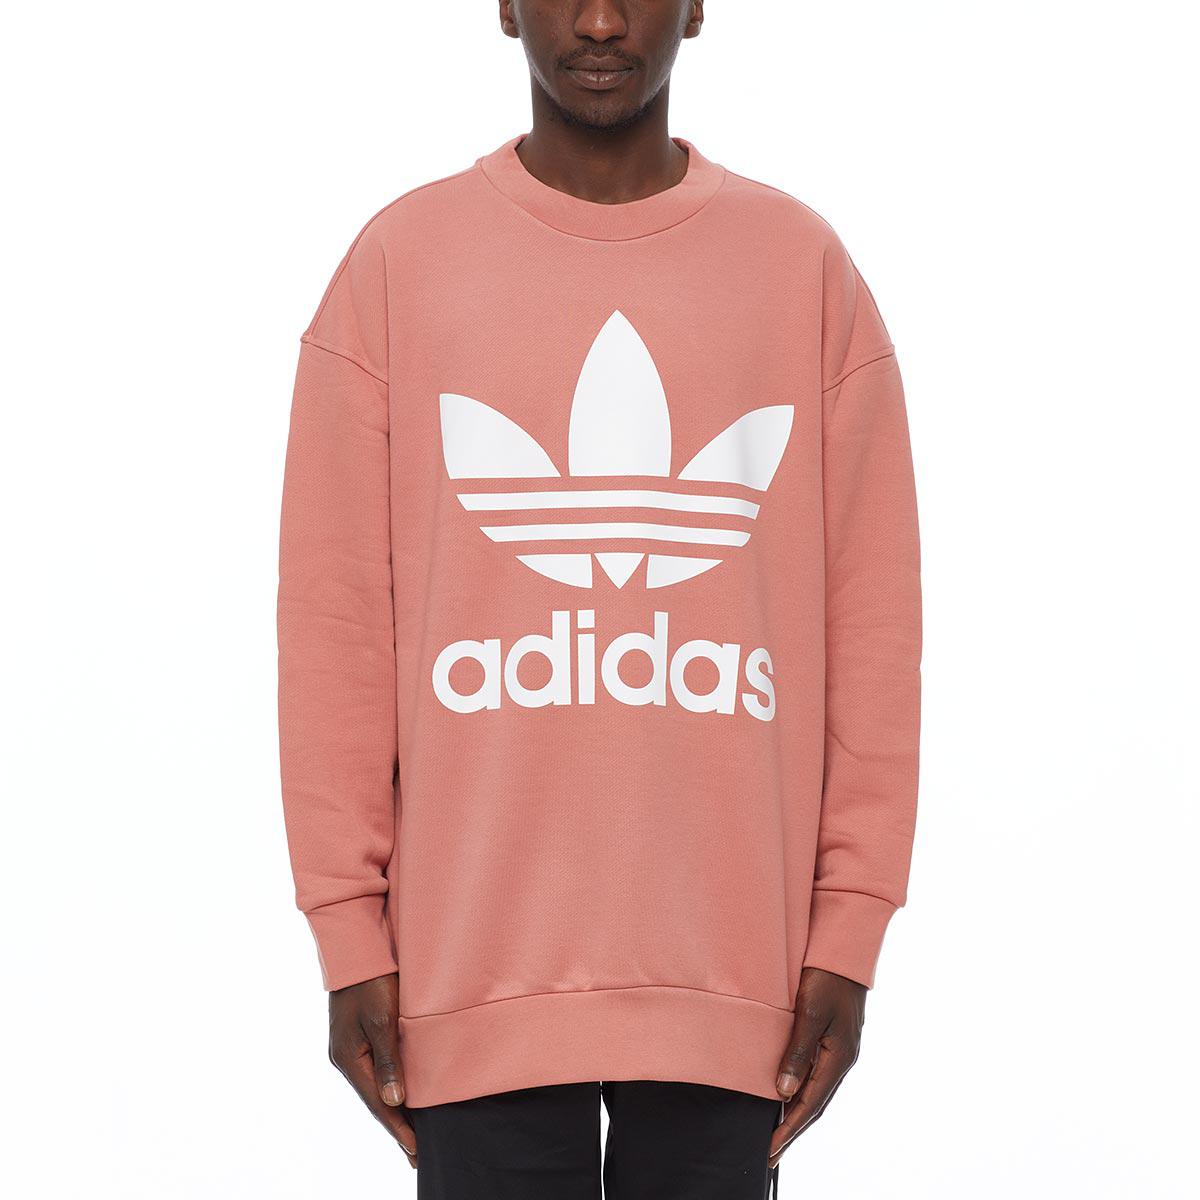 Lyst - Adidas Originals Crew Sweatshirt in Pink for Men